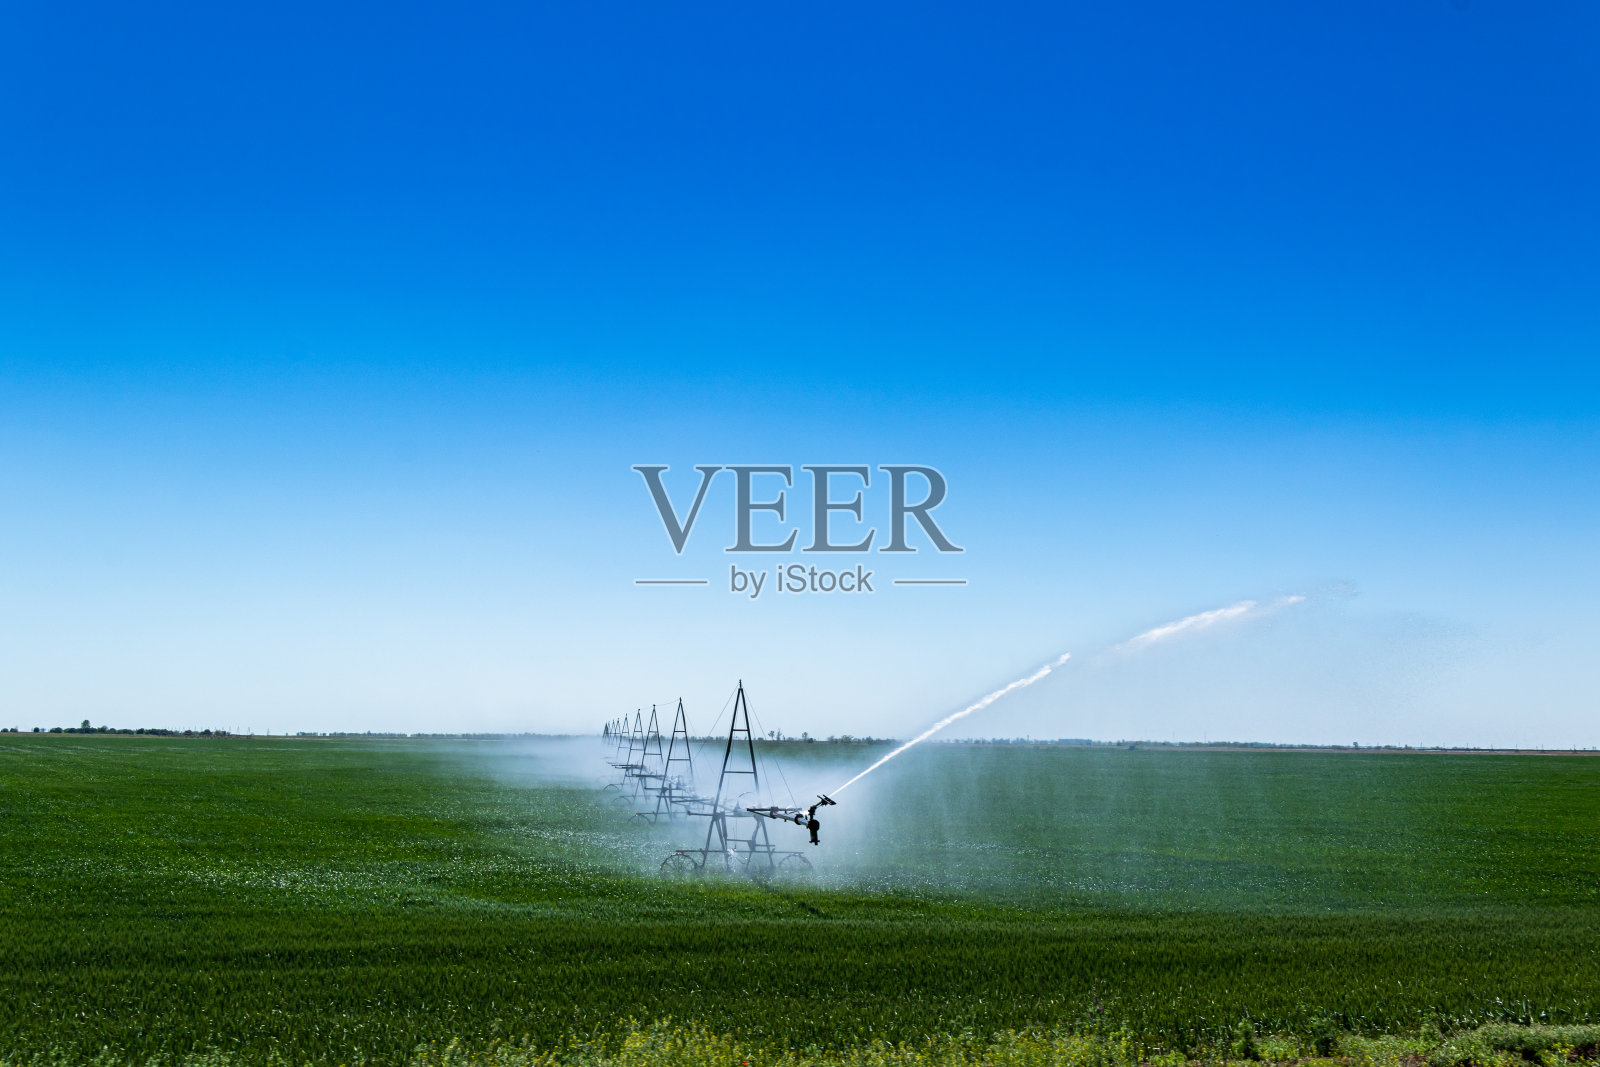 农场用水灌溉系统是农场的自动化照片摄影图片